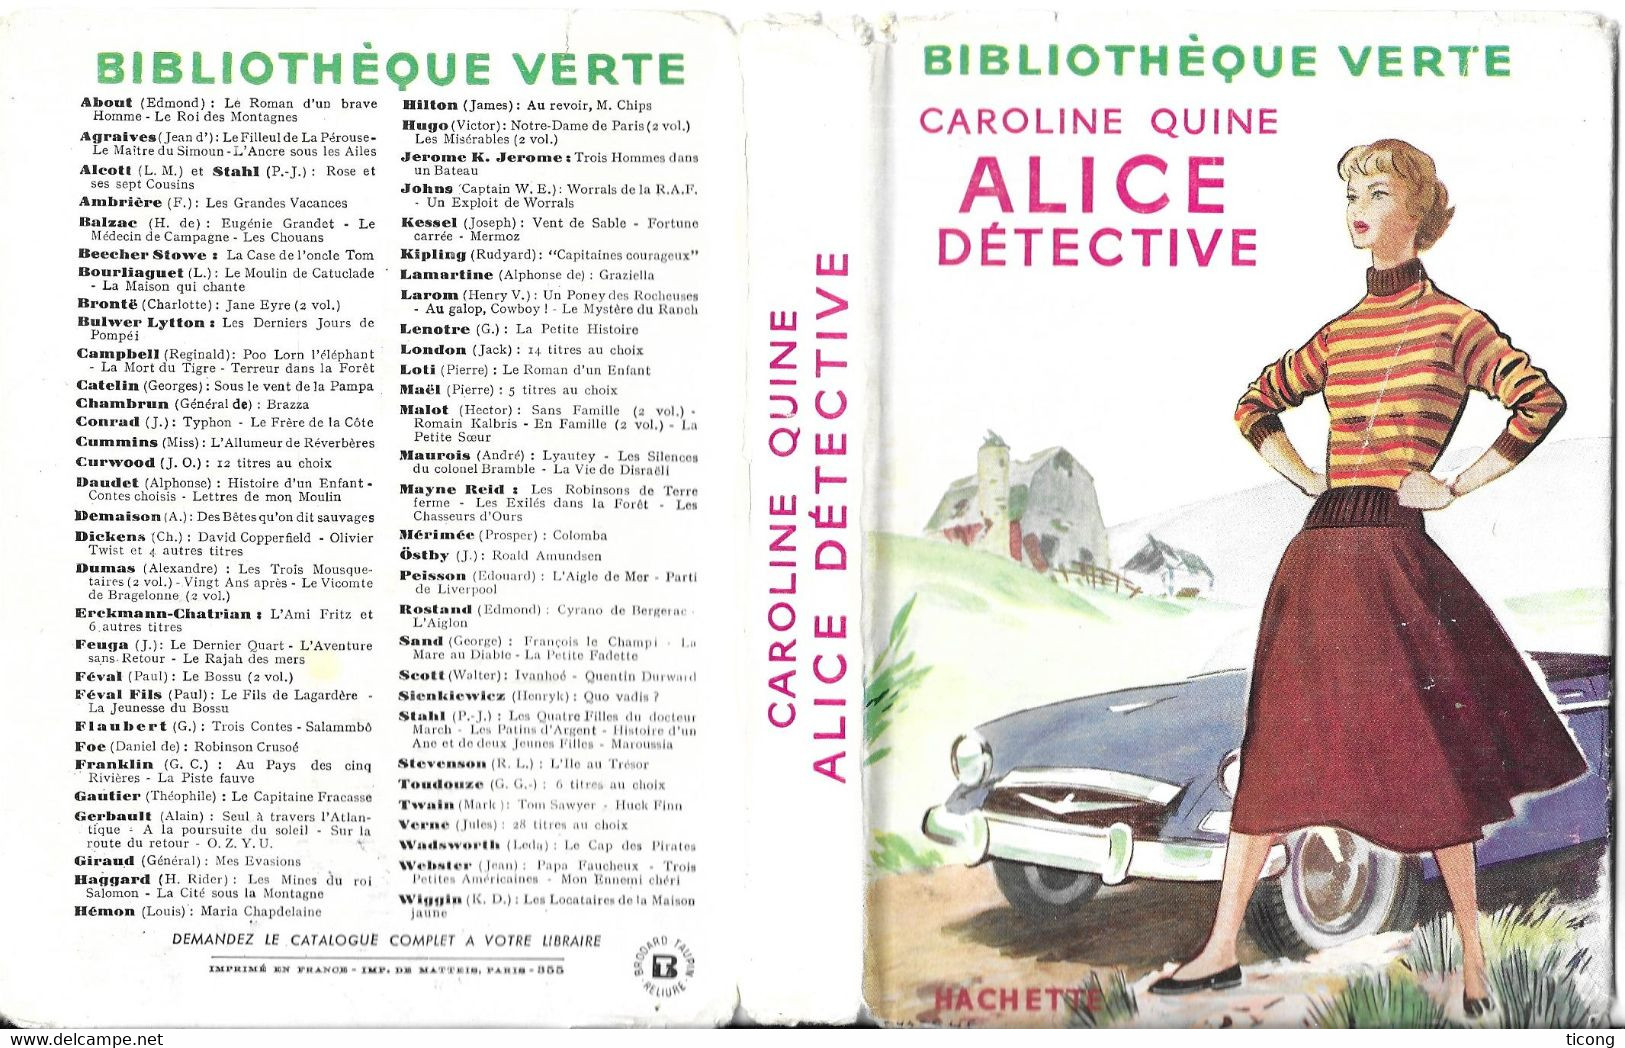 ALICE DETECTIVE PAR CAROLINE QUINE - ILLUSTRATIONS ALBERT CHAZELLE, EDITION ORIGINALE AVEC JAQUETTE DE 1955 - Bibliotheque Verte